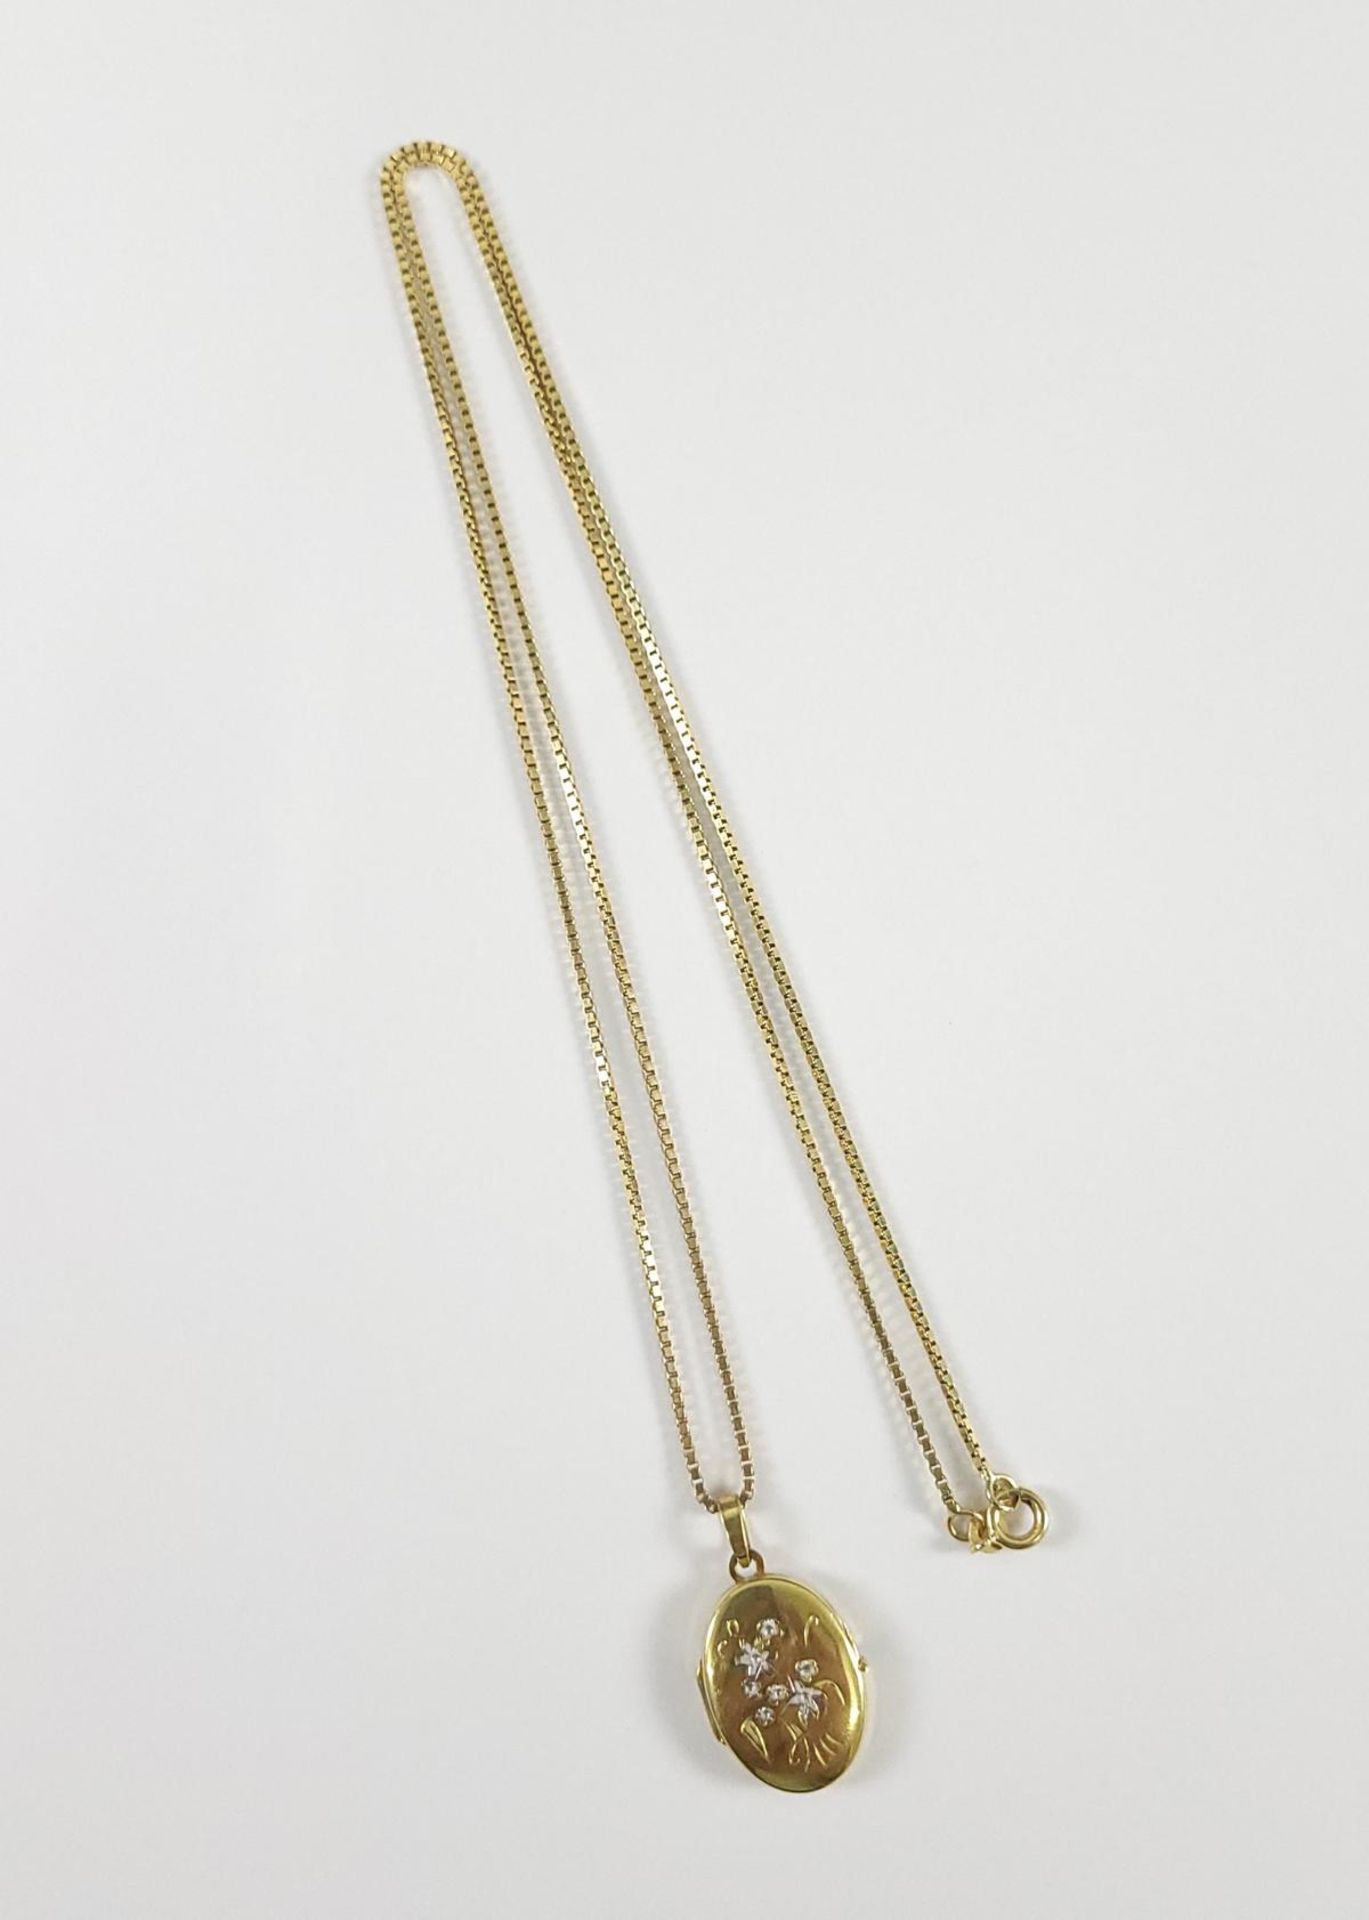 Halskette mit Medaillon, 8 Karat Gelbgold